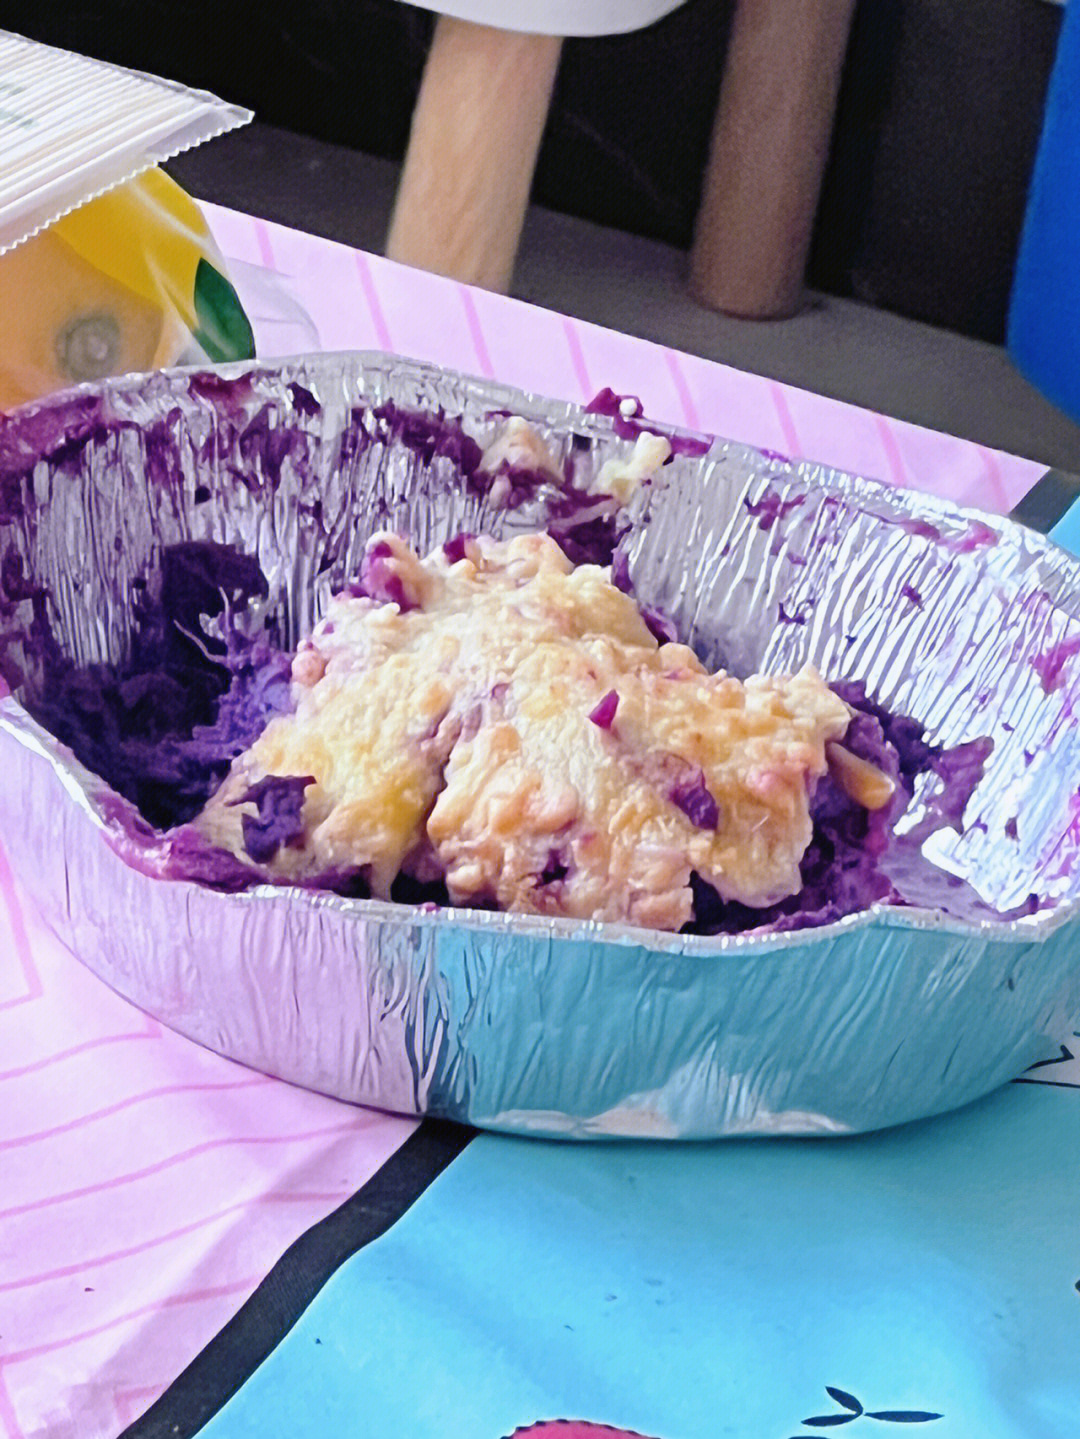 食材:紫薯,炼乳,芝士碎,牛奶做法:11566紫薯切片蒸熟压成泥,加入